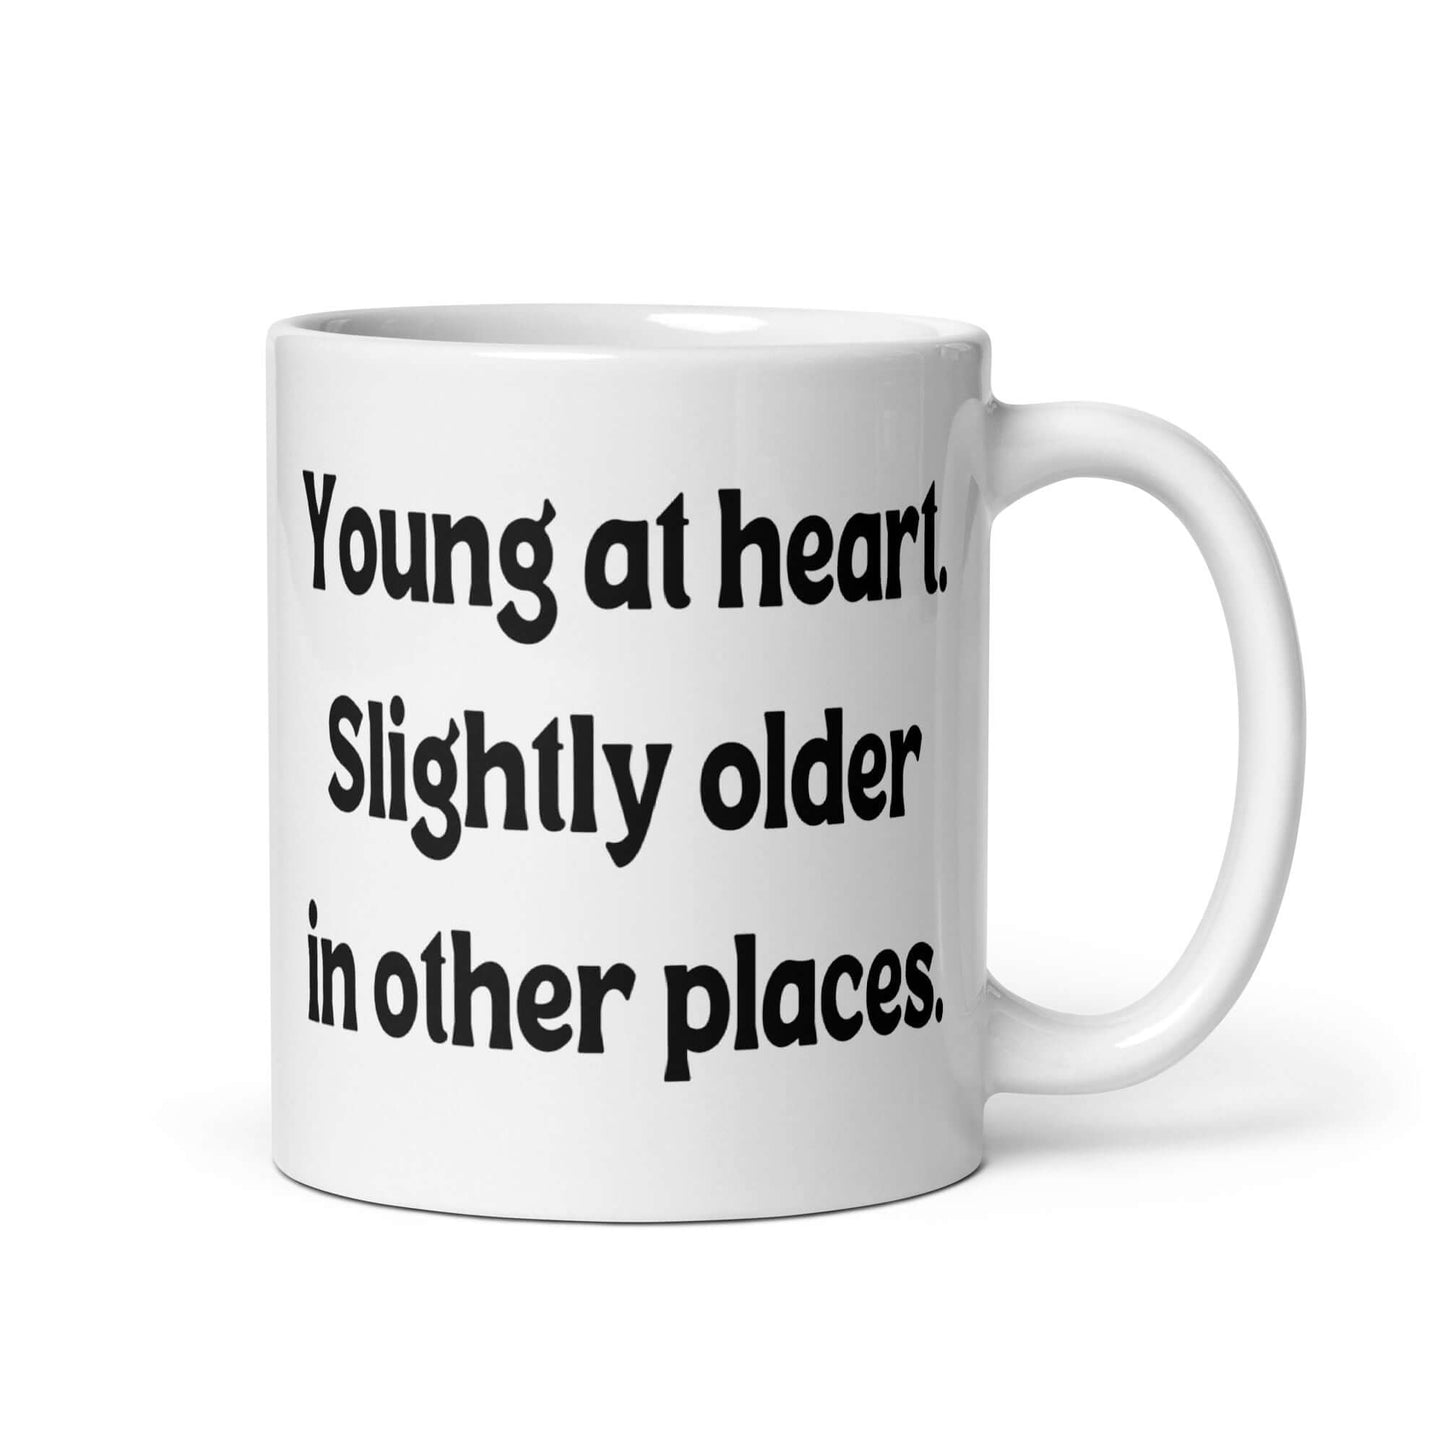 Young at heart ceramic mug